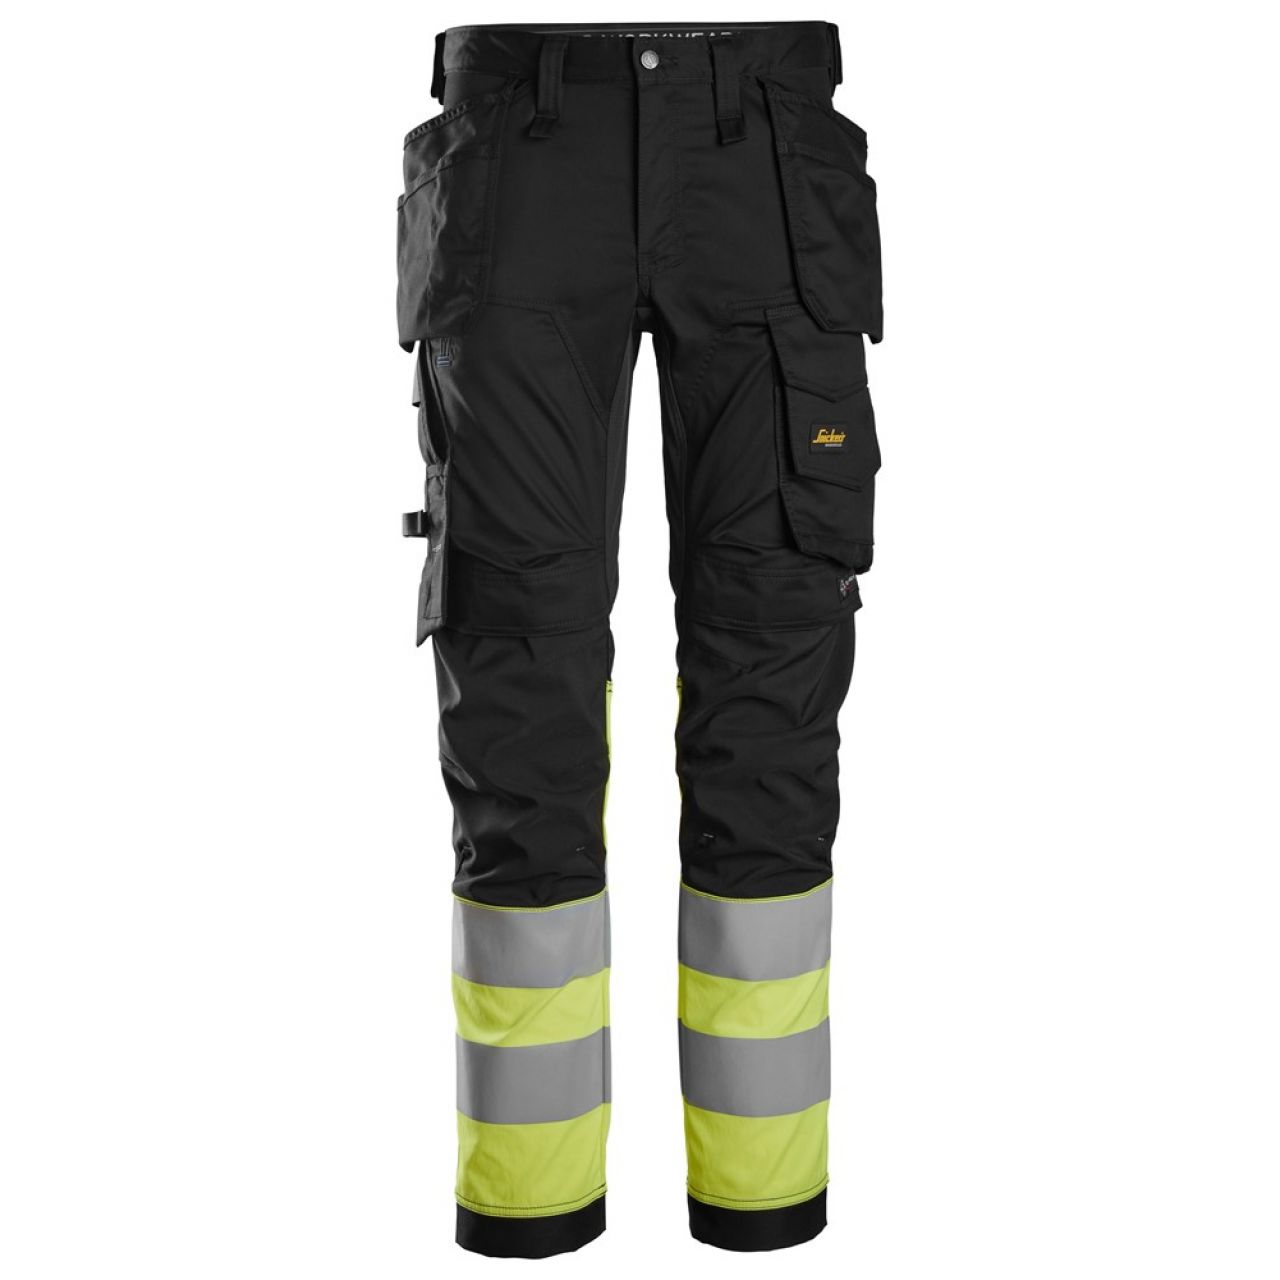 6234 Pantalones largos de trabajo elásticos de alta visibilidad clase 1 con bolsillos flotantes negro-amarillo talla 154